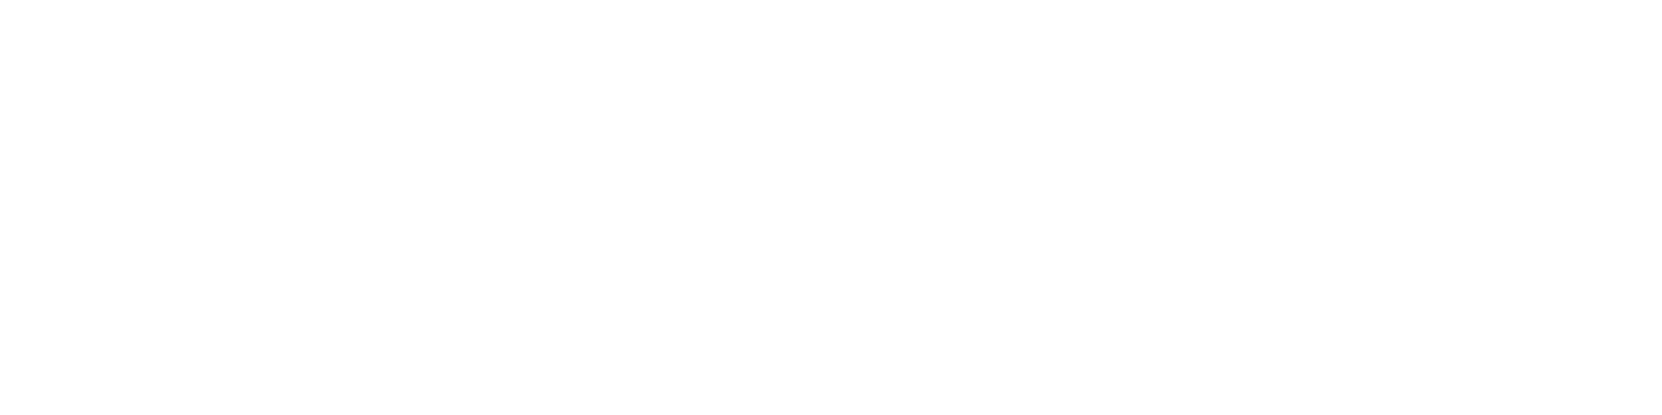 Logo RANDOM saison 01